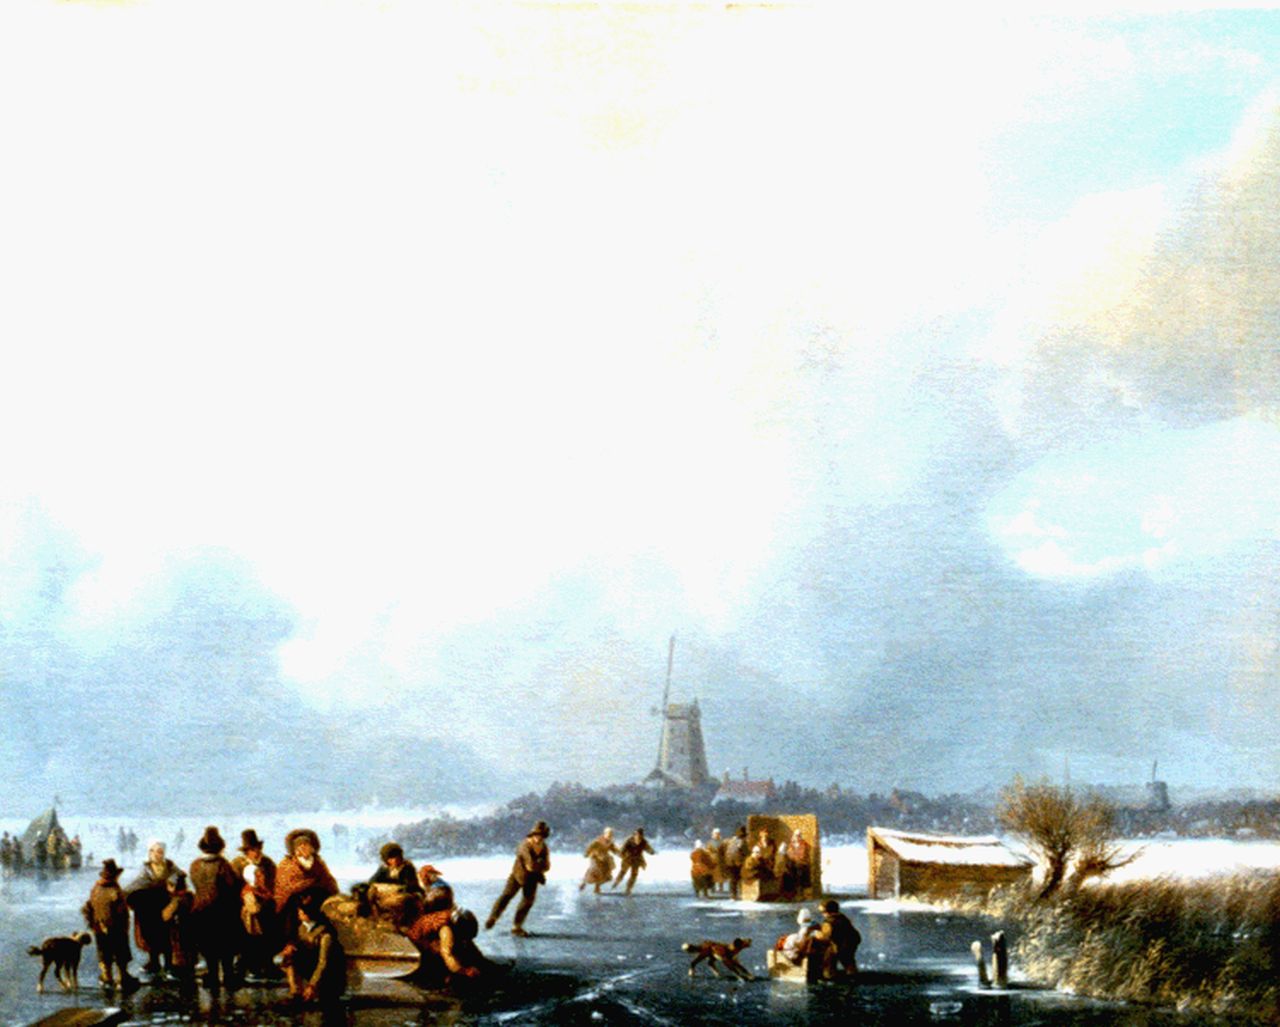 Stok J. van der | Jacobus van der Stok, Hollandse winter, olieverf op doek 48,0 x 60,0 cm